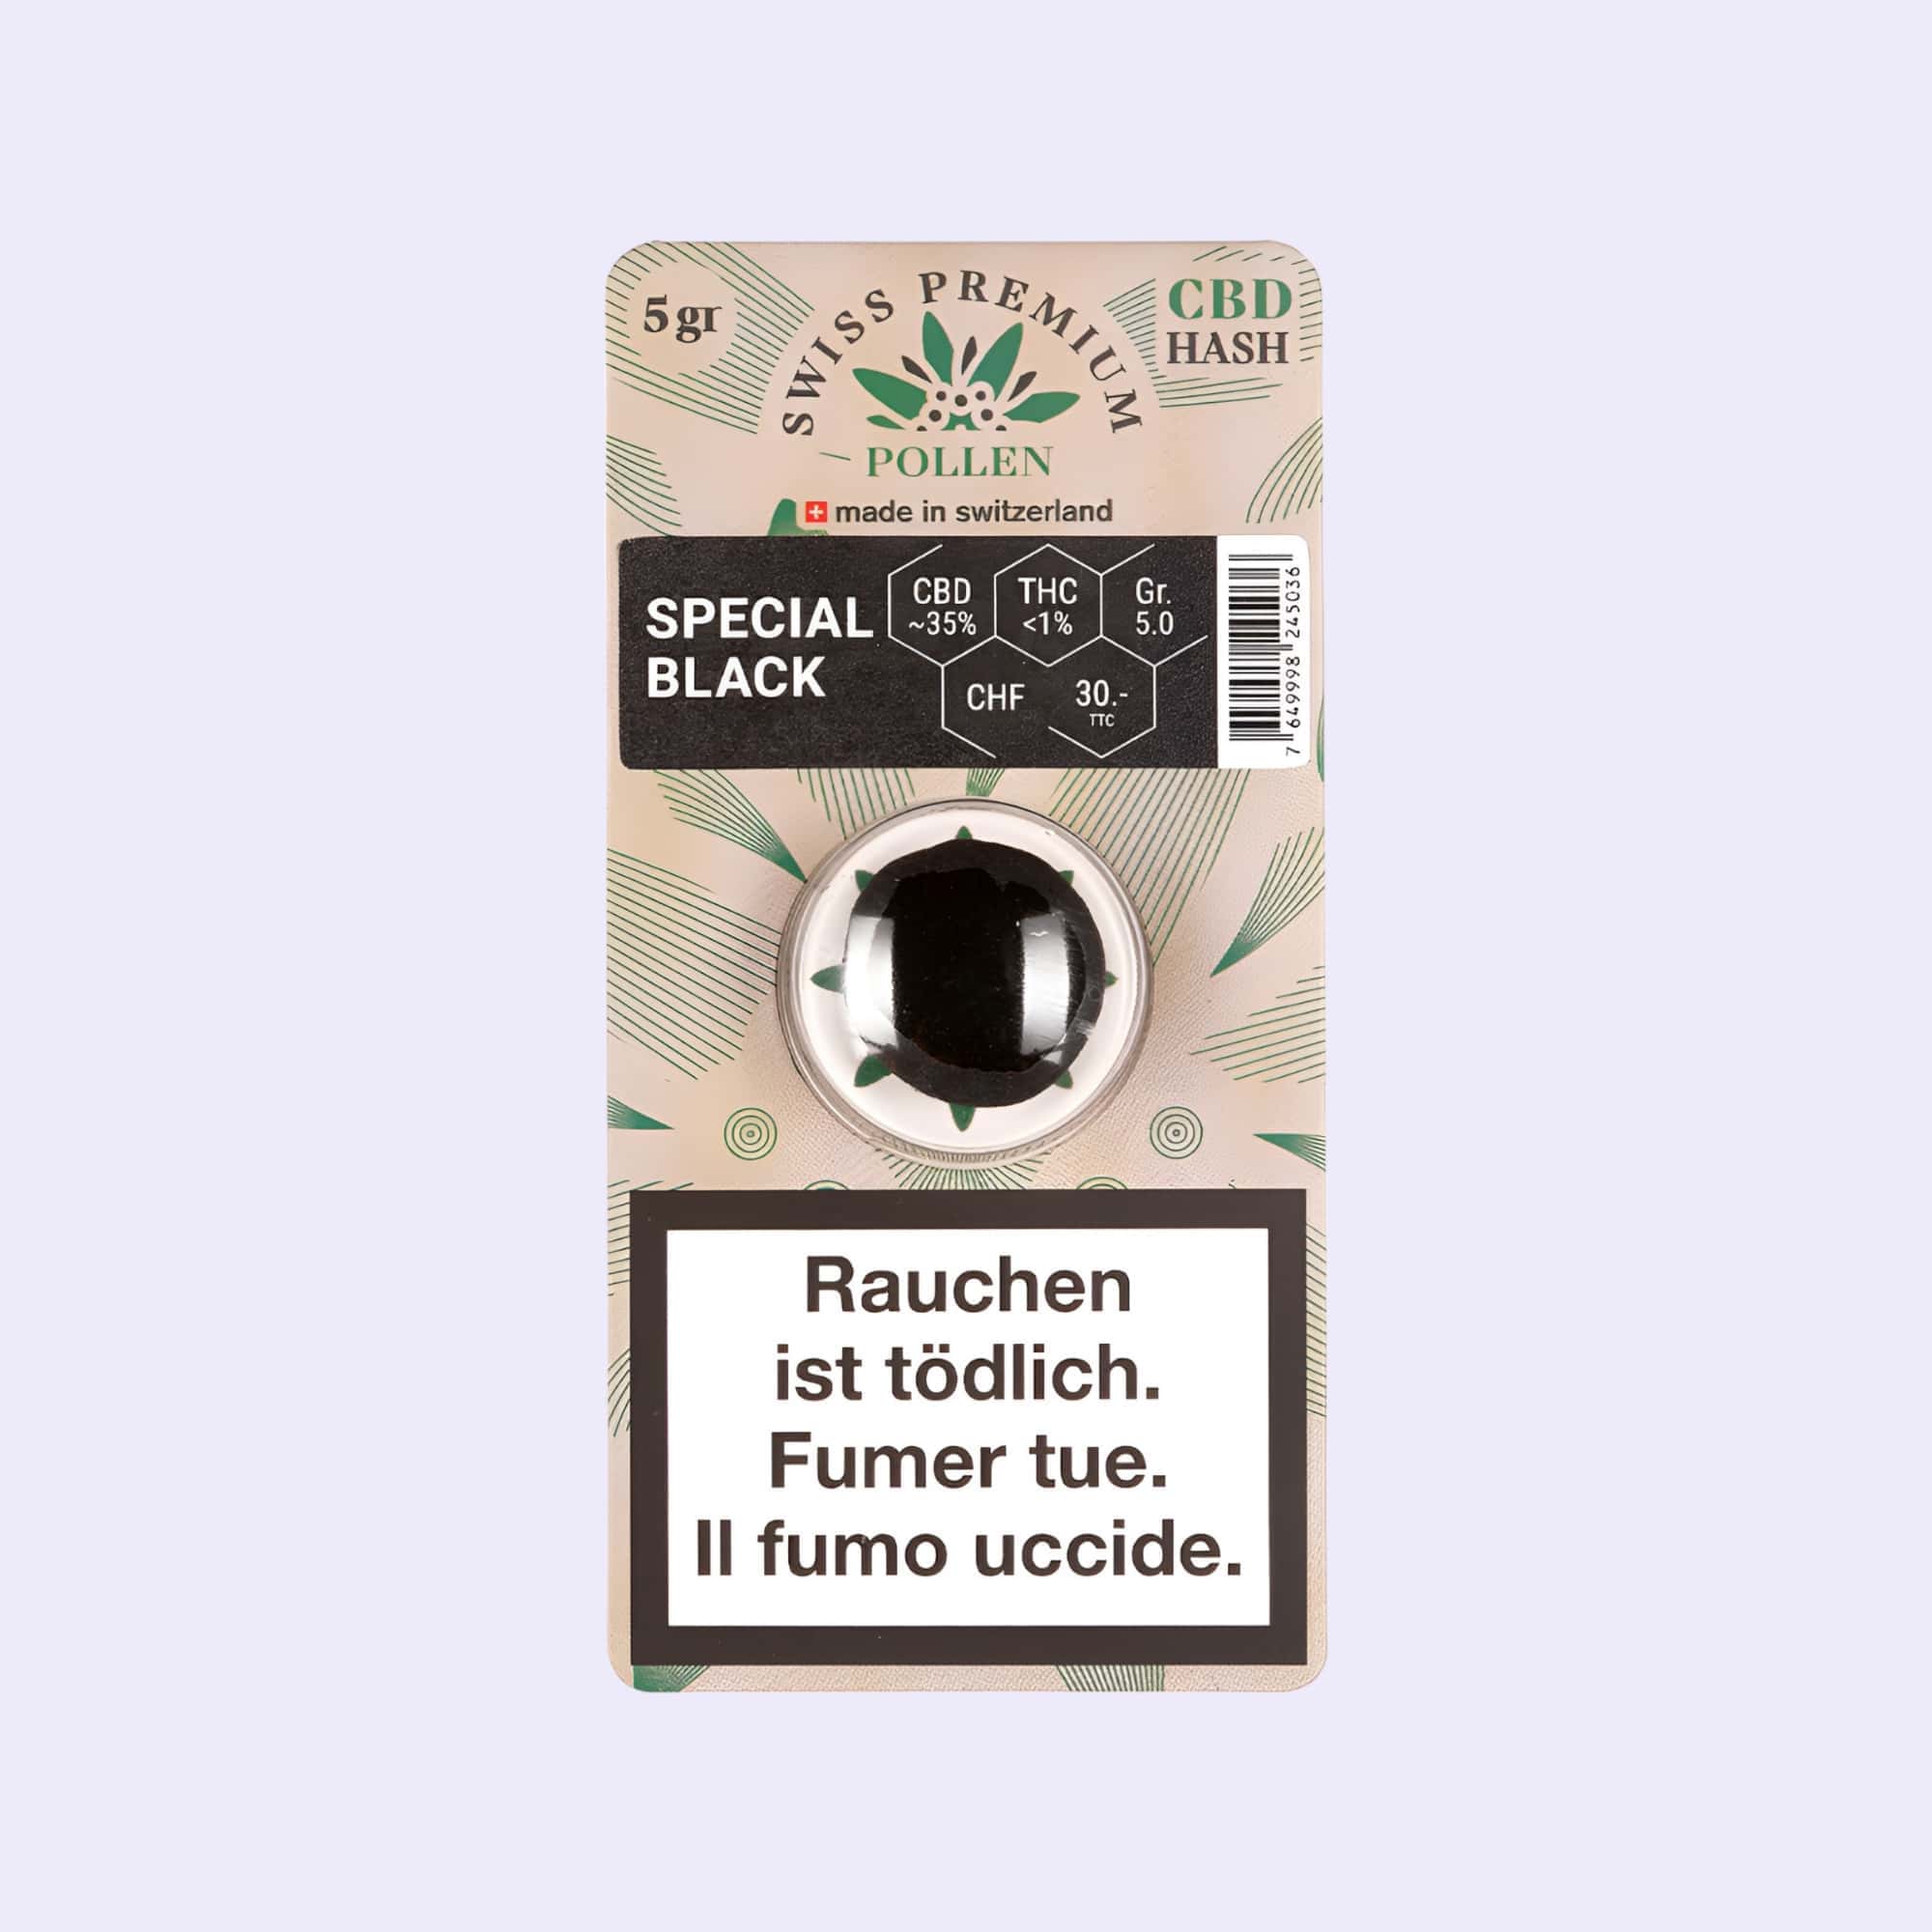 Dieses Bild zeigt das Haschisch Special Black von der Firma Swiss Premium Pollen